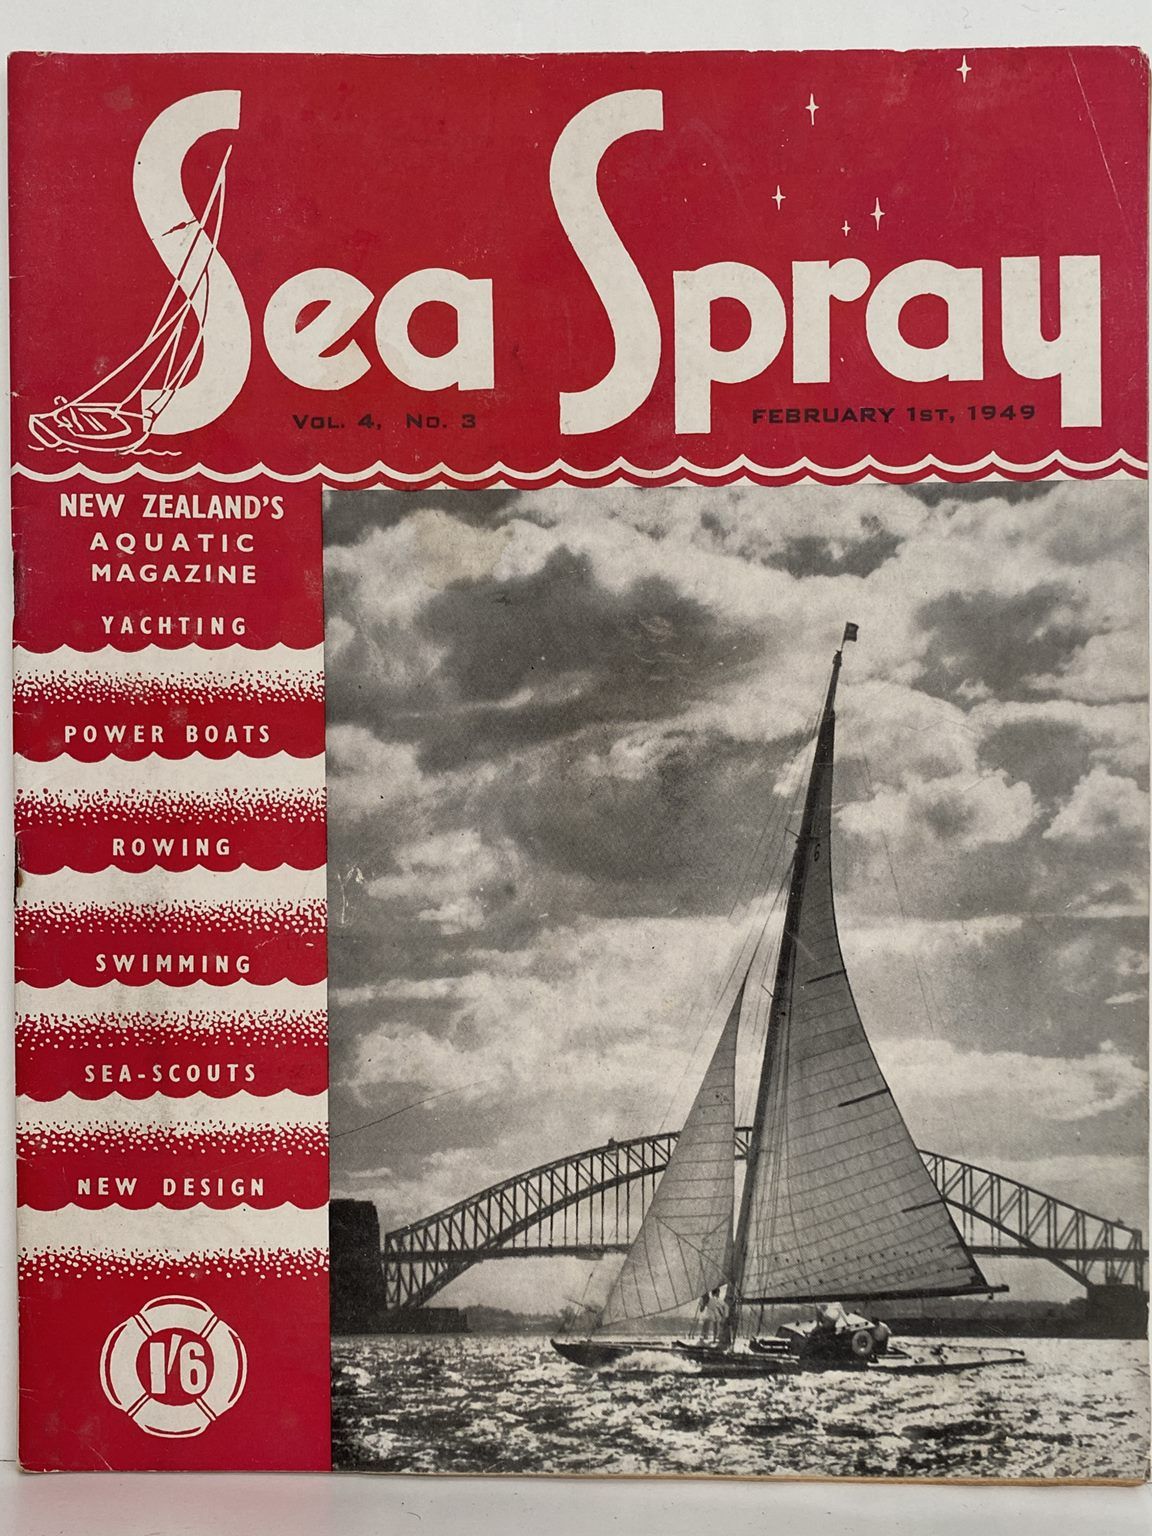 VINTAGE MAGAZINE: Sea Spray - Vol. 4, No. 3 - February 1949